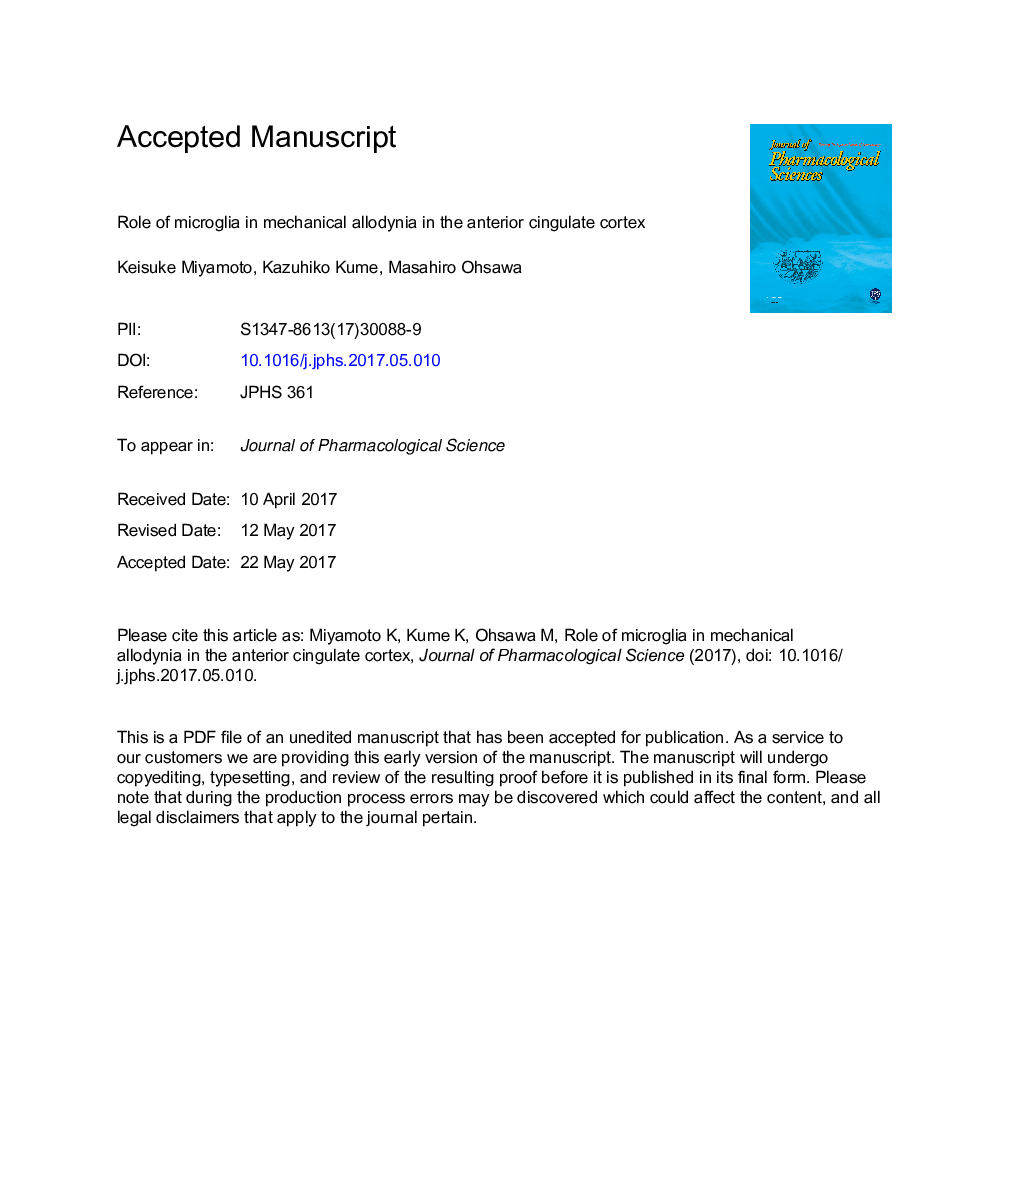 نقش میکروگلیا در آلدینیا مکانیکی در قشر کورتون قدامی 